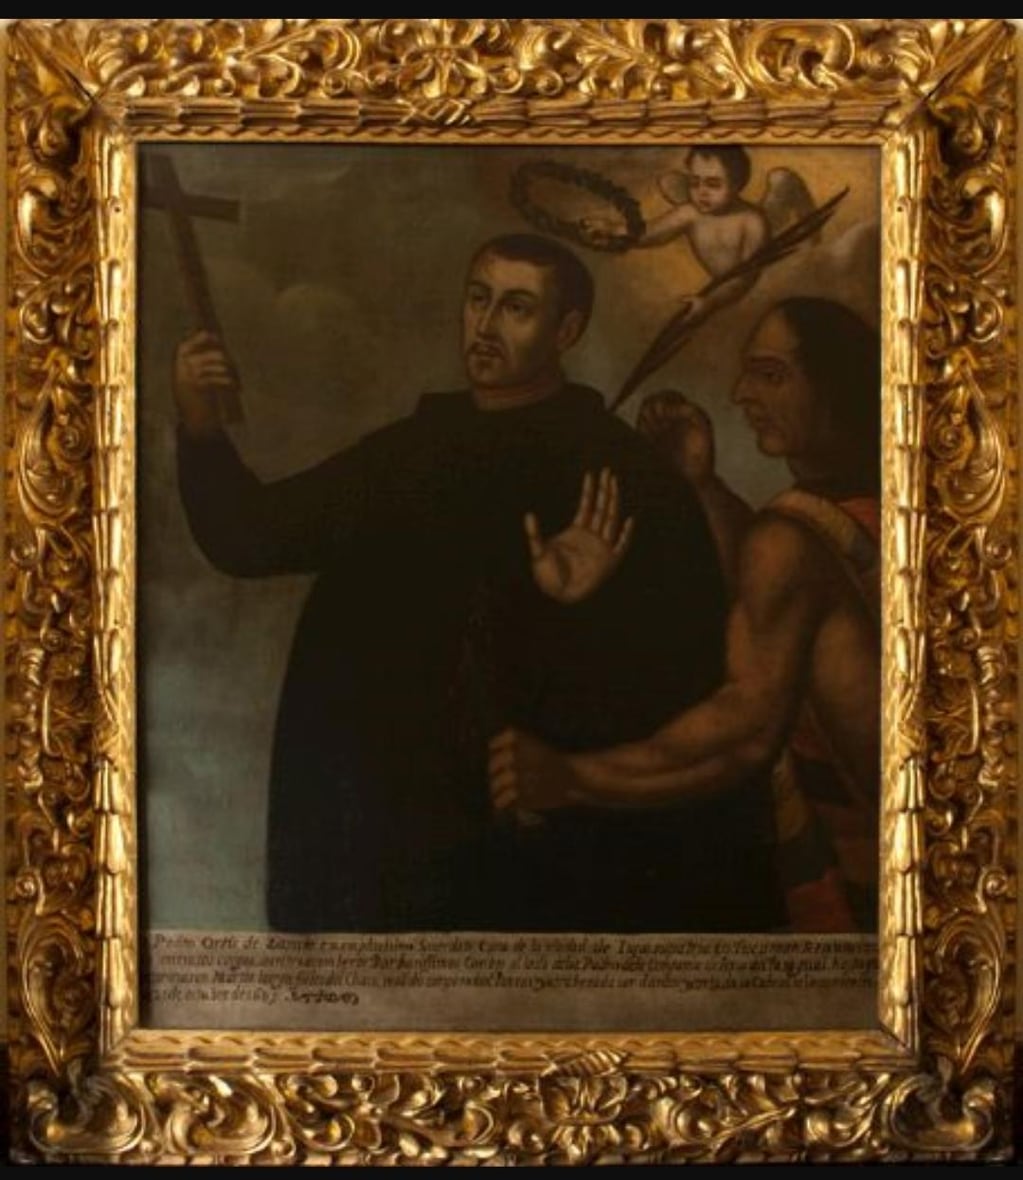 Cuadro con la imagen del beato Pedro Ortiz de Zárate, que se encuentra en el Museo de Arte Colonial de Colombia y que se hallaba en la Iglesia de Santa Clara de Bogotá. Fue pintado a fines del siglo XVII o comienzos de 1700.